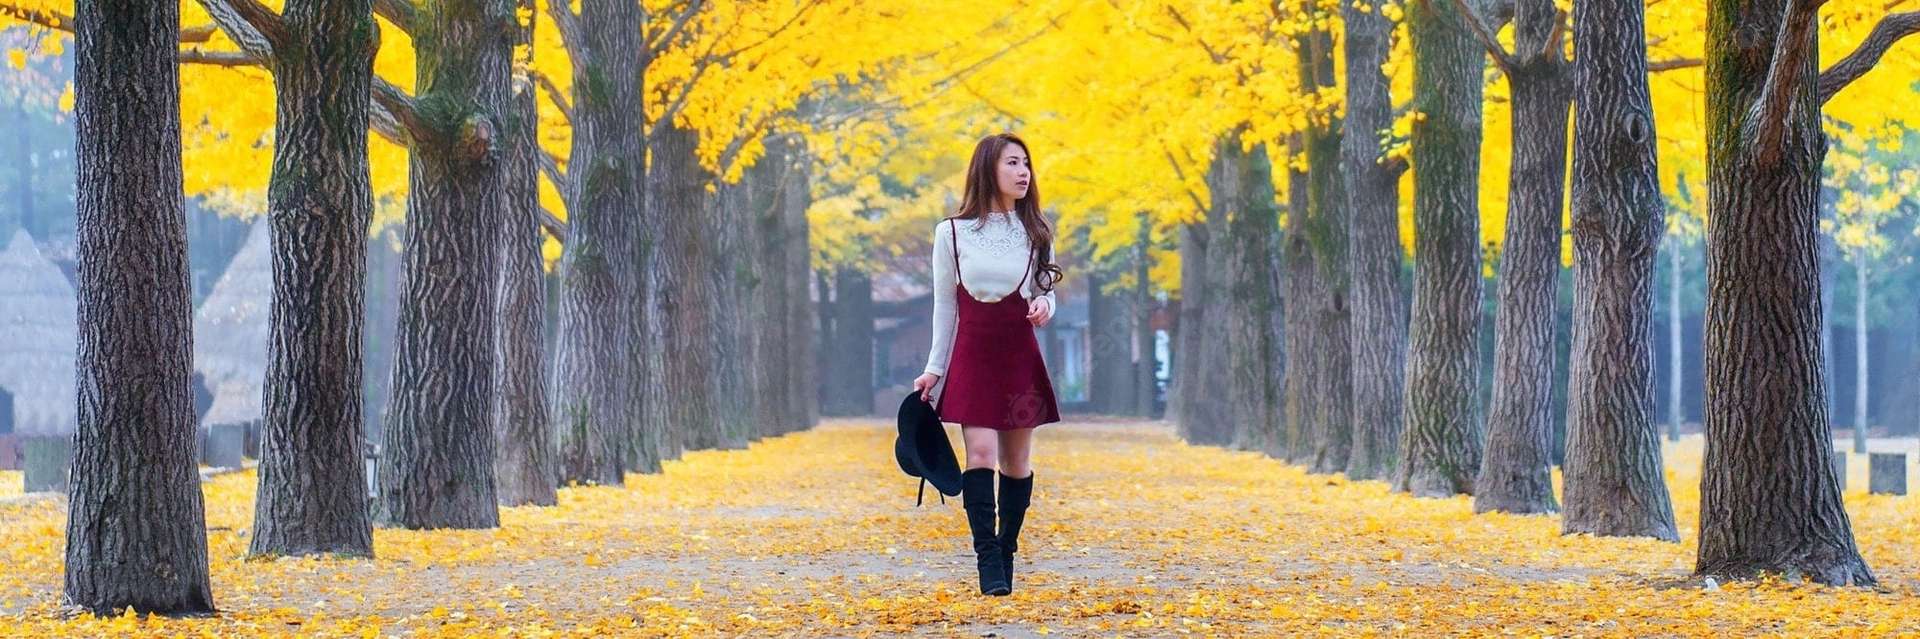 6 địa điểm du lịch mùa thu Hàn Quốc đẹp đến trôi tim - cẩm nang du lịch